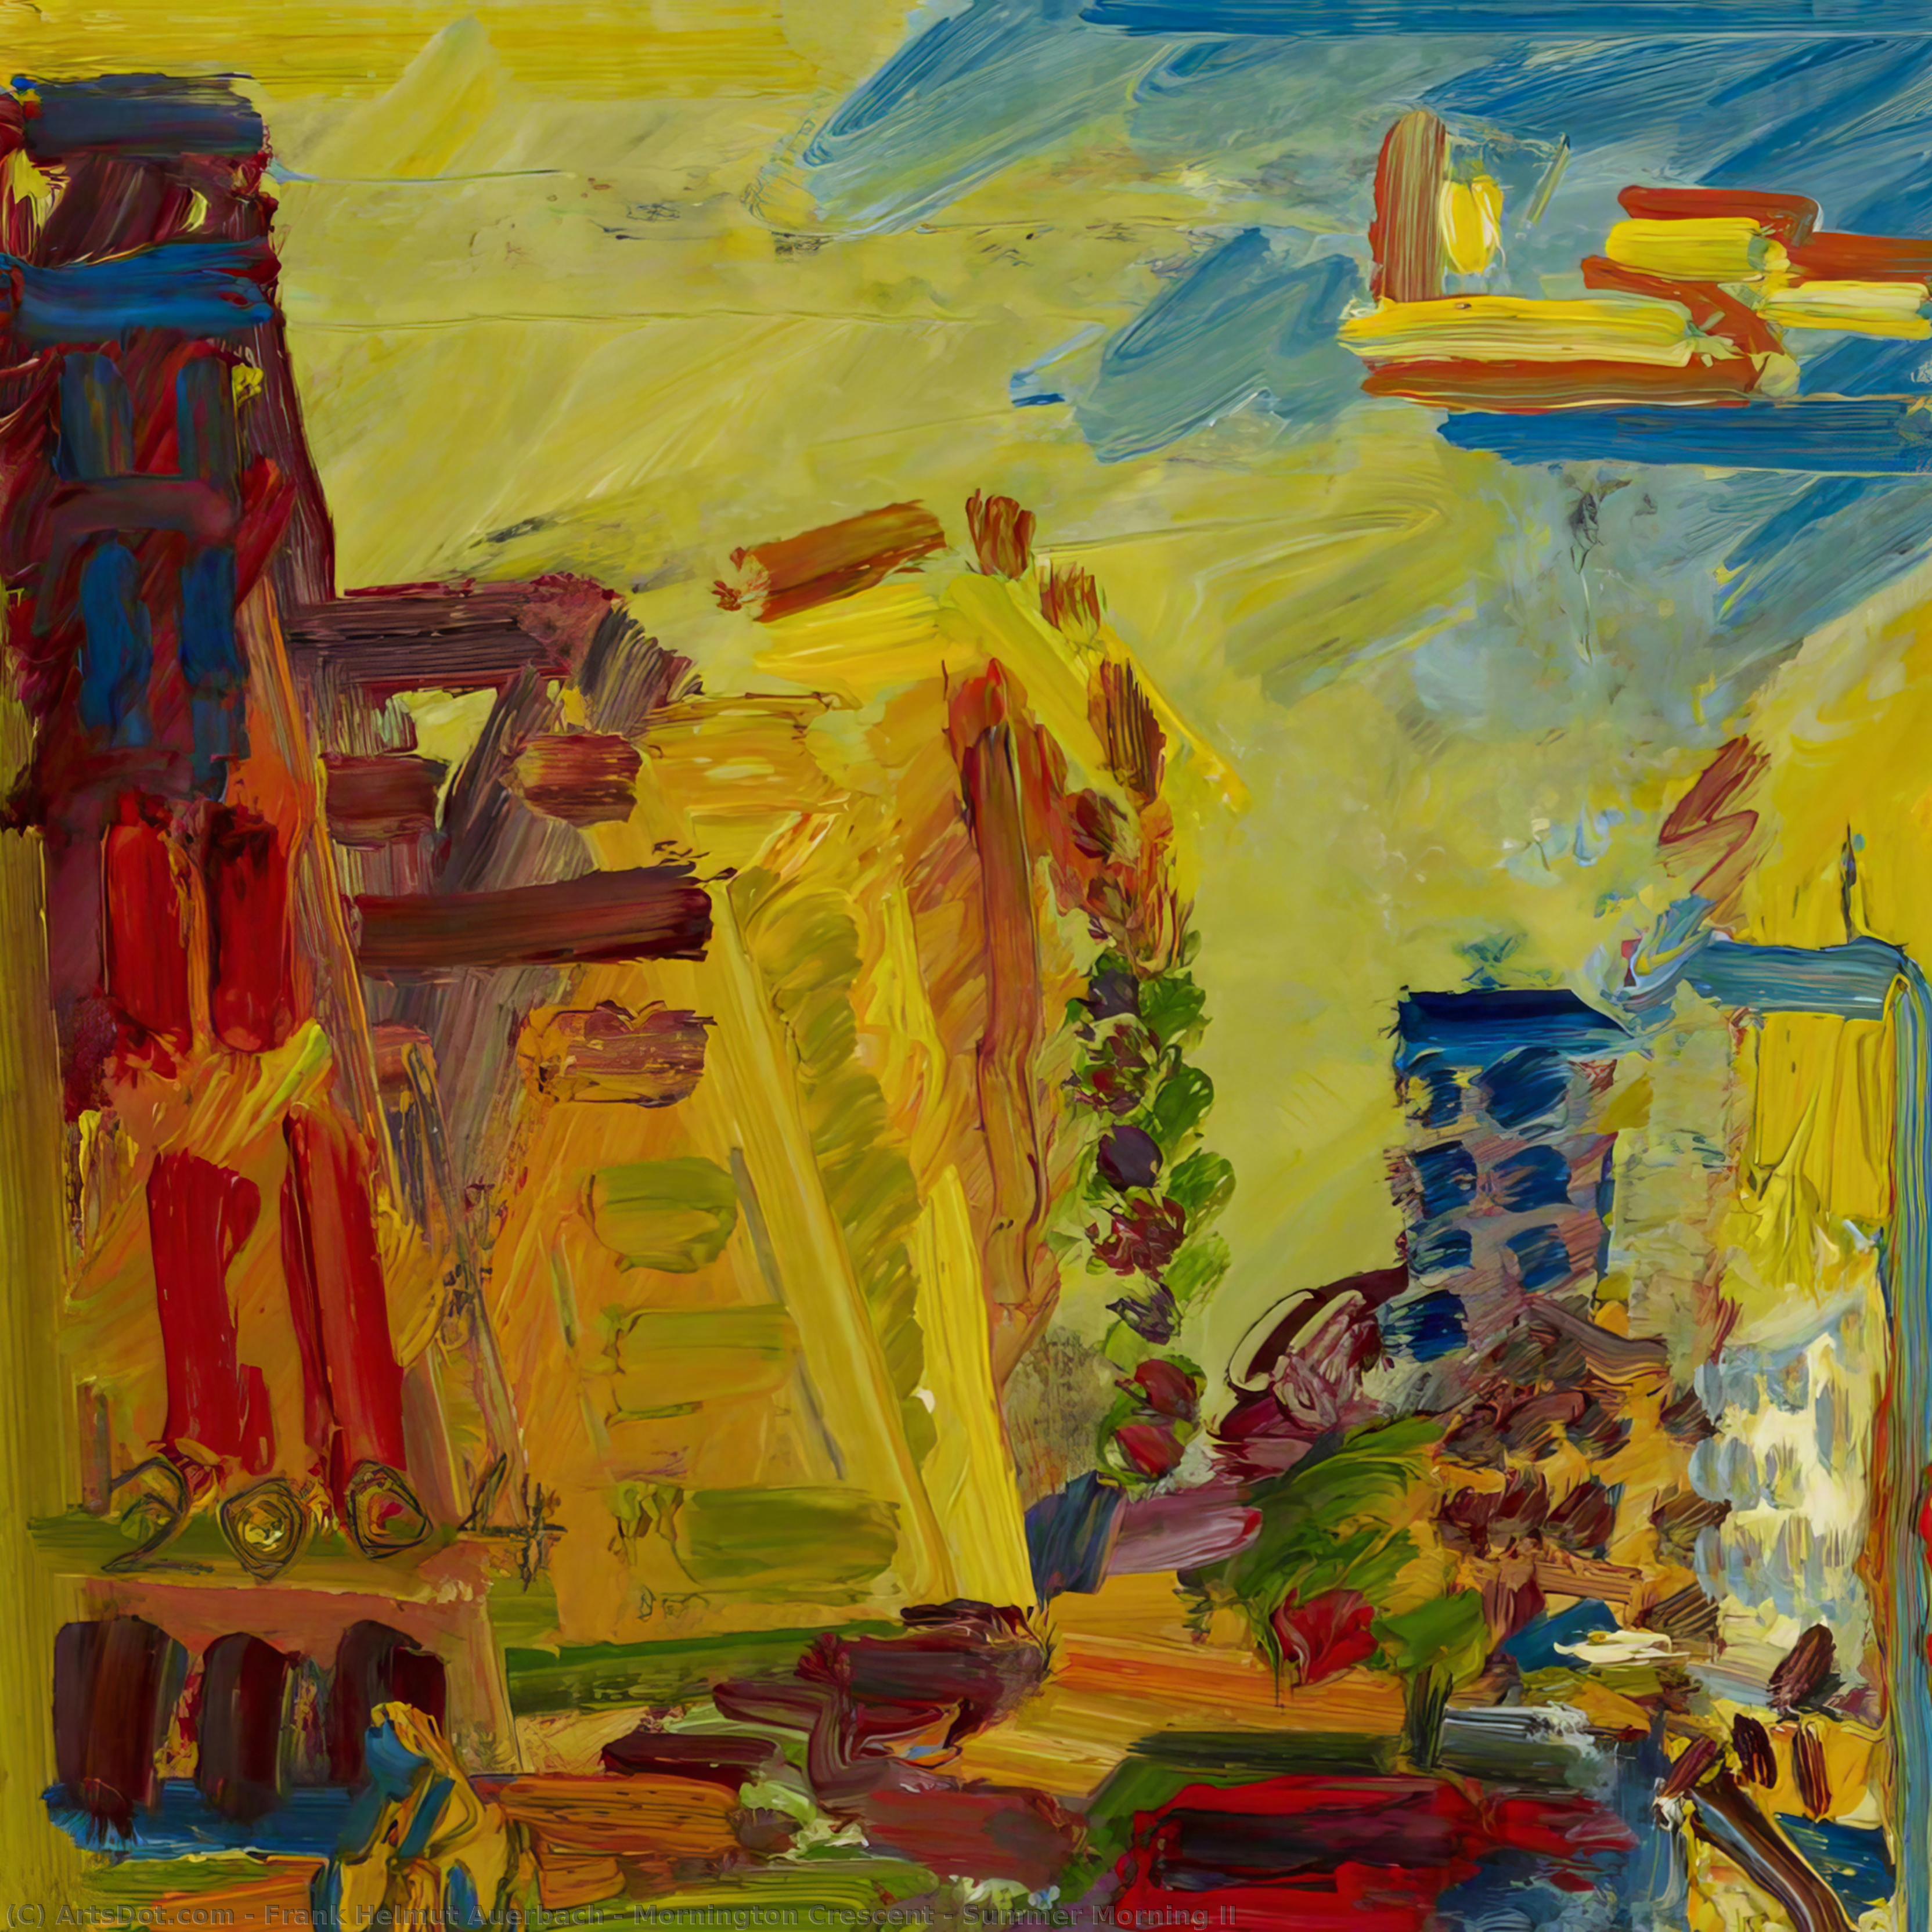 Mornington Crescent – Summer Morning II, 2004 by Frank Helmuth Auerbach Frank Helmuth Auerbach | ArtsDot.com